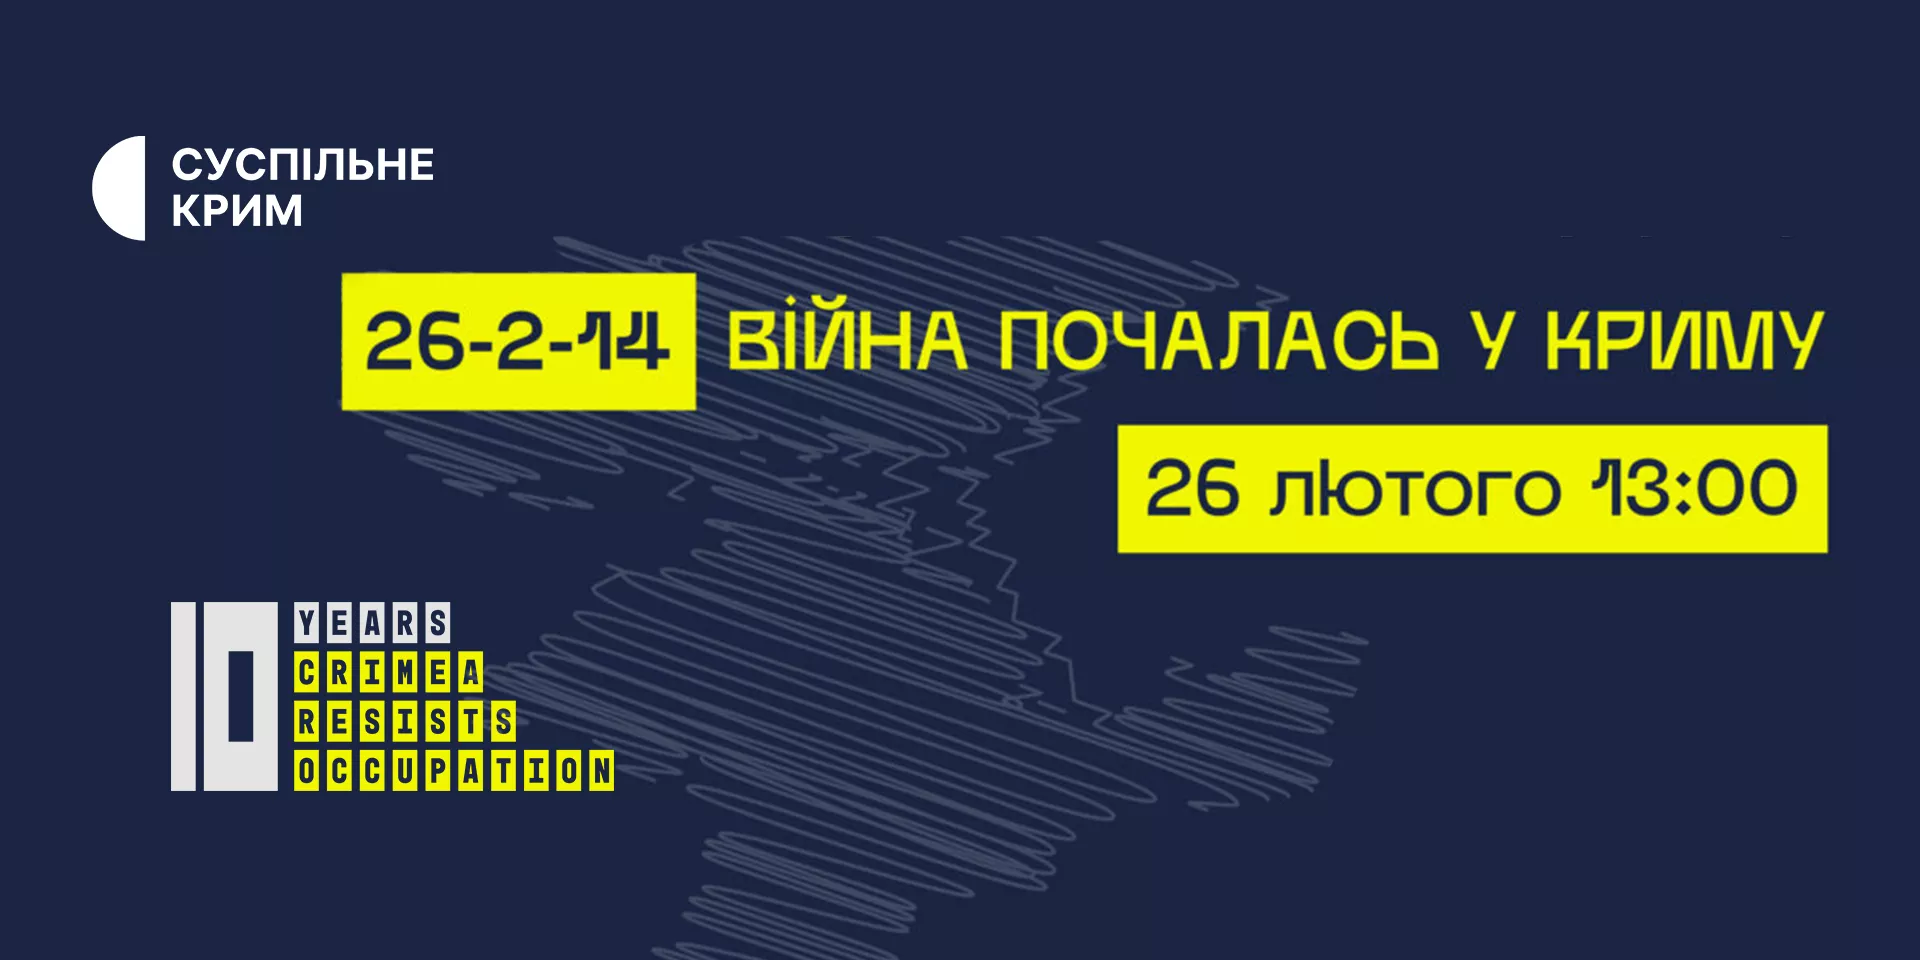 Трансляцію форуму «26-2-14: Війна почалась у Криму» покаже «Суспільне Крим»